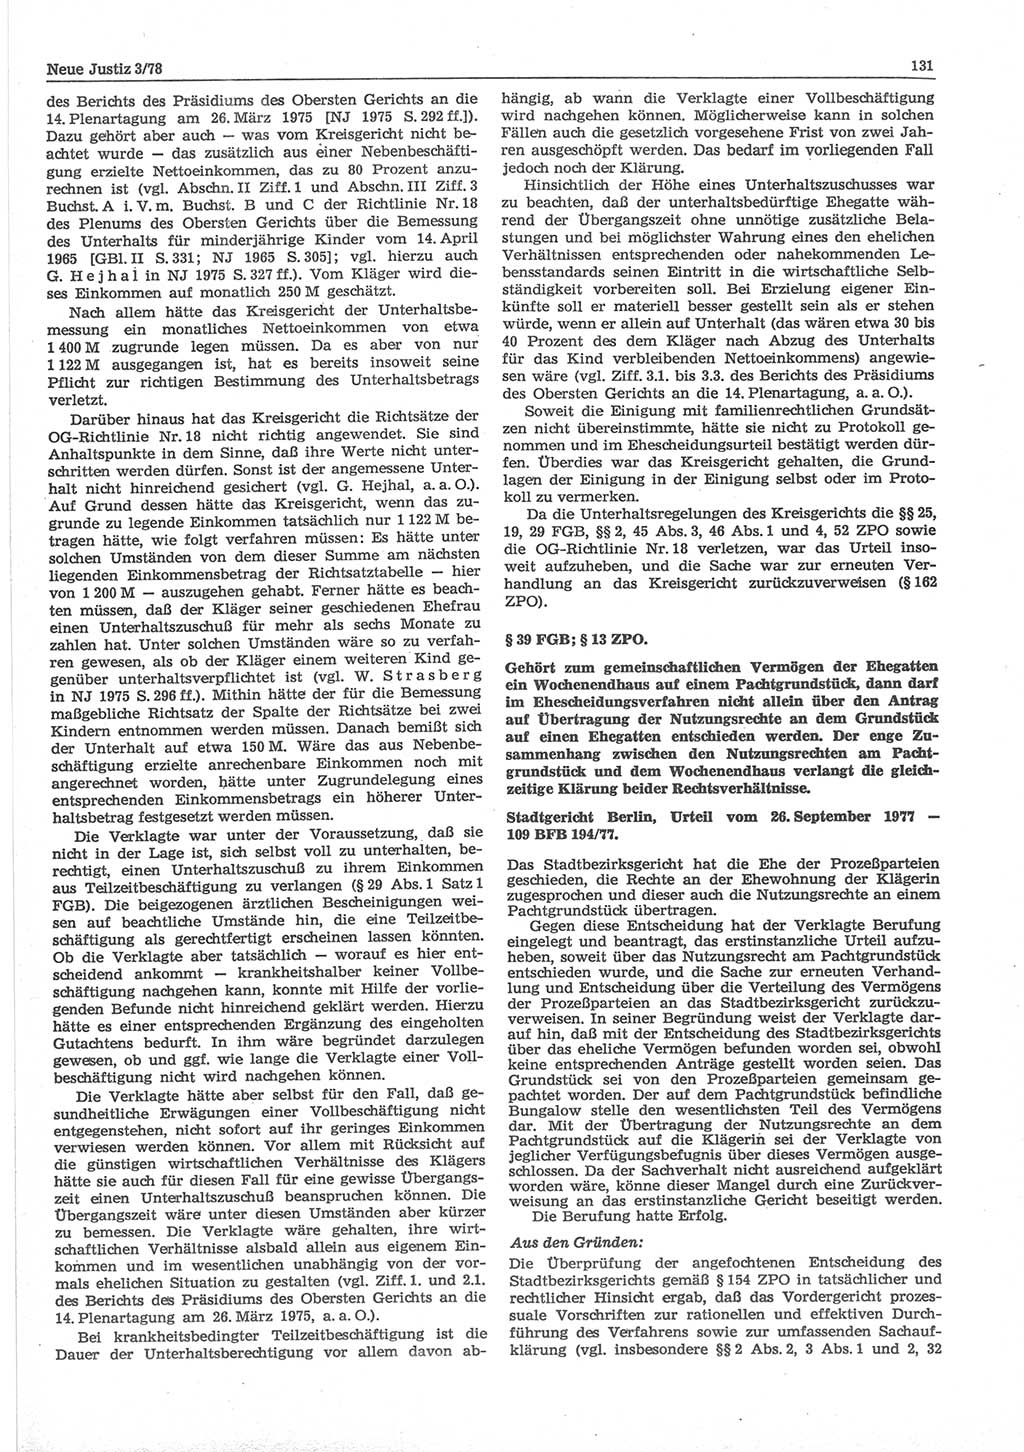 Neue Justiz (NJ), Zeitschrift für sozialistisches Recht und Gesetzlichkeit [Deutsche Demokratische Republik (DDR)], 32. Jahrgang 1978, Seite 131 (NJ DDR 1978, S. 131)